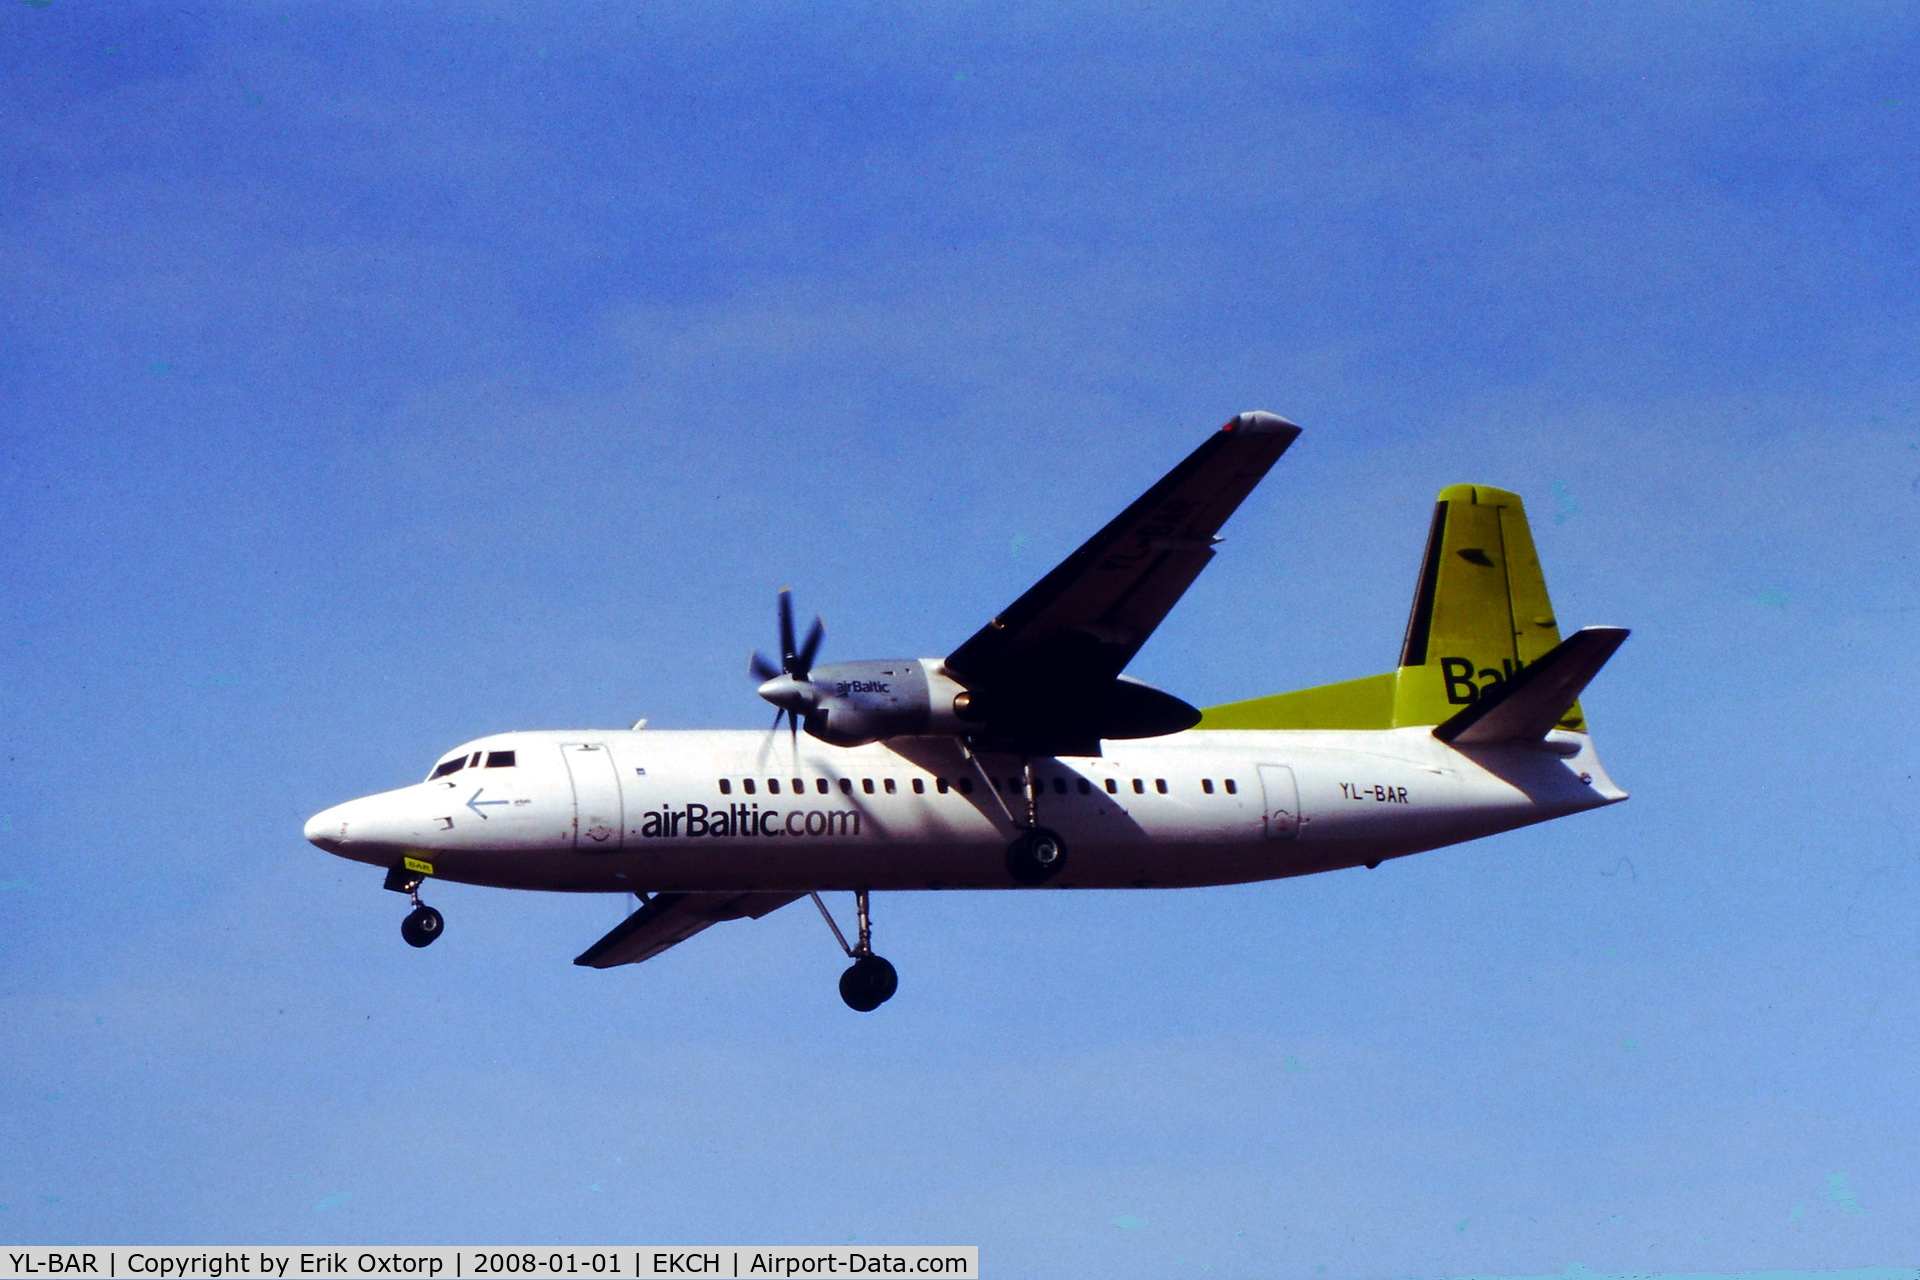 YL-BAR, 1989 Fokker 50 C/N 20149, YL-BAR in CPH APR09